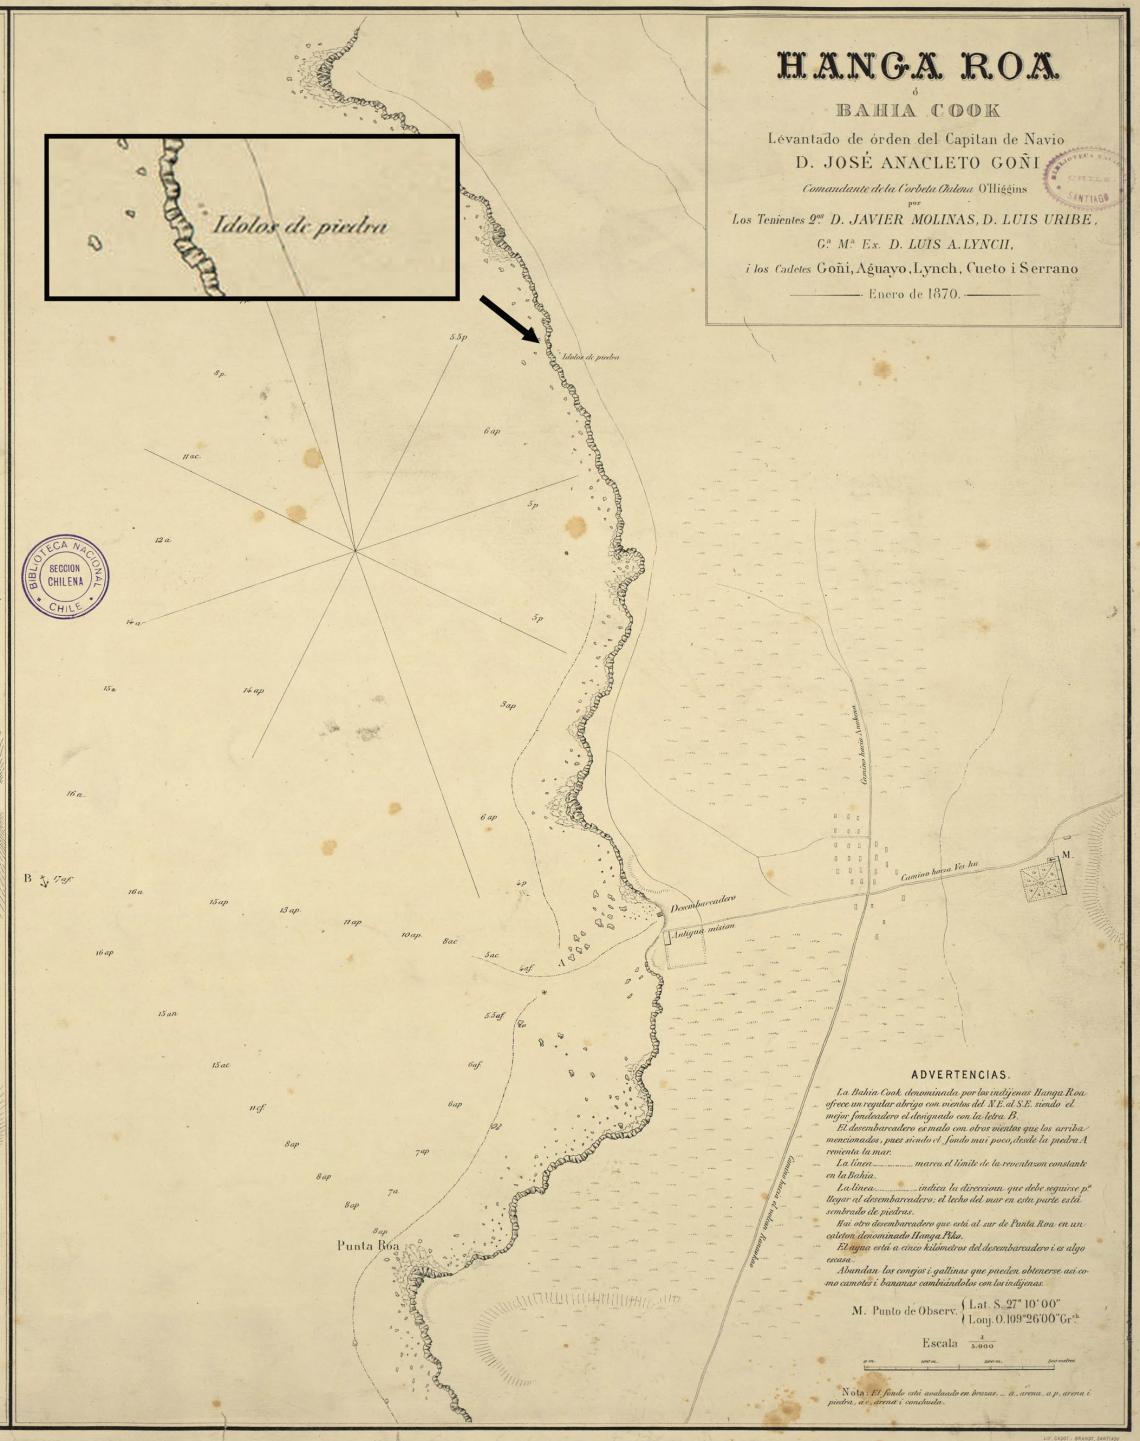 Mapa de Hanga Roa elaborado por la expedición de la corbeta O’Higgins. Se aprecia en el recuadro la ubicación de unos “ídolos de piedra”.